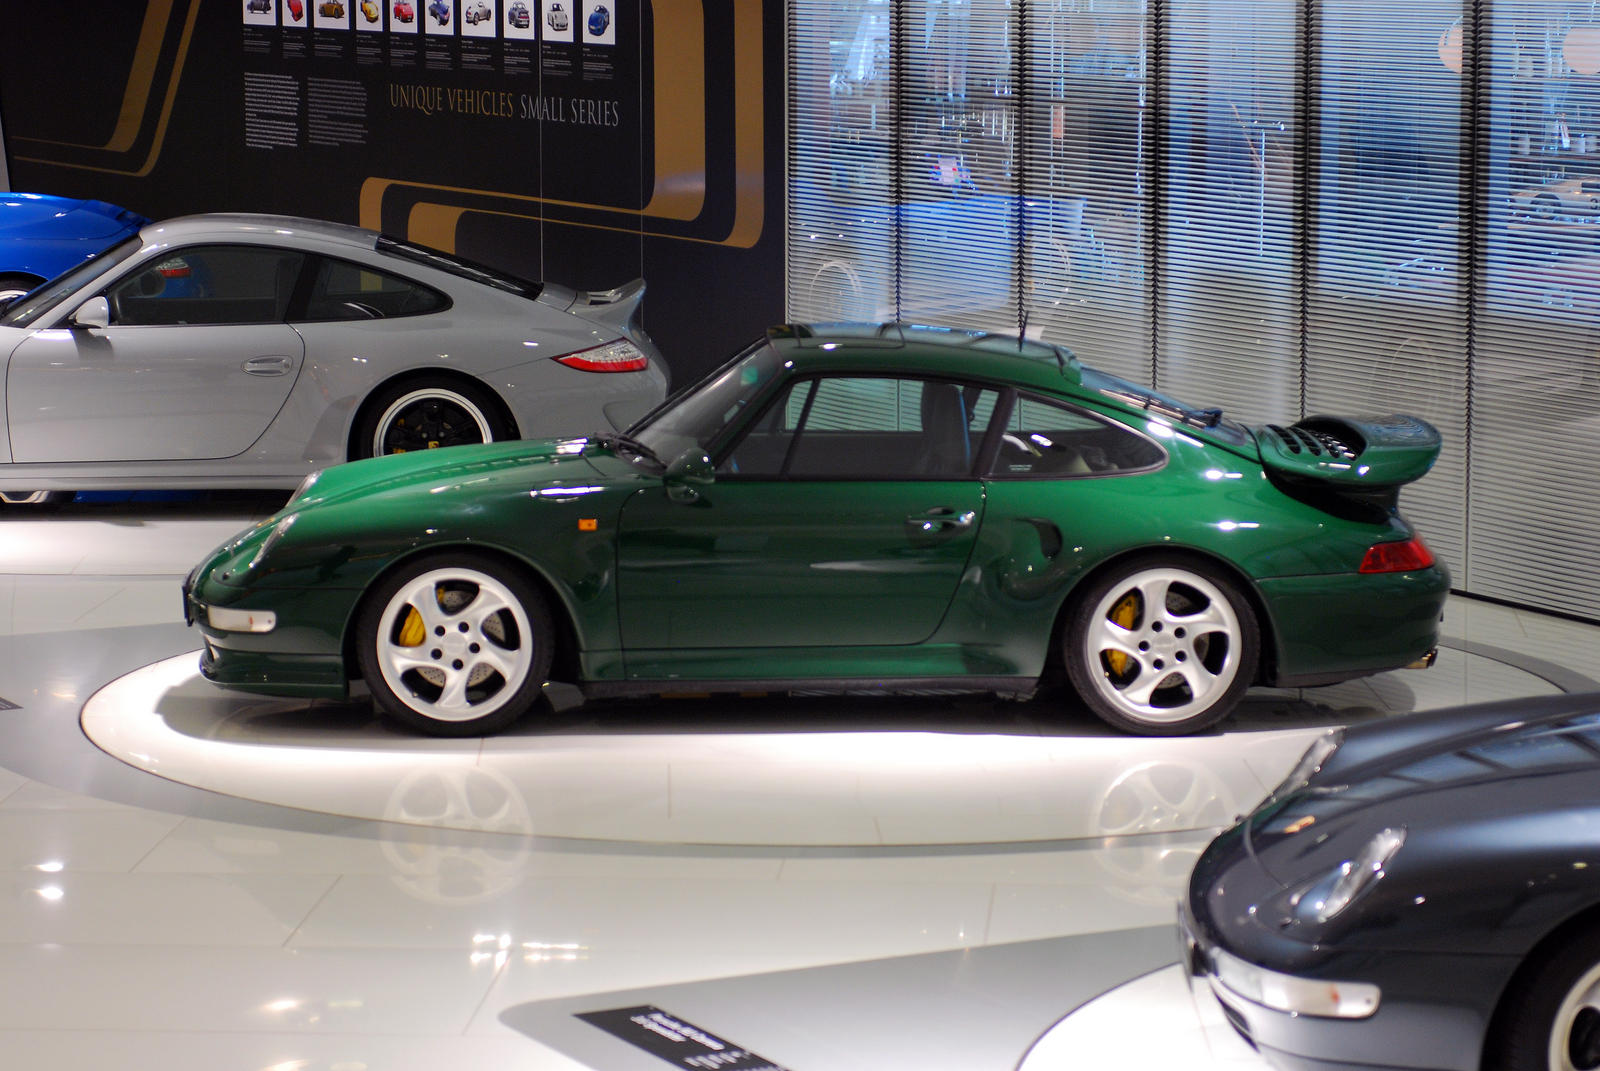 993 Turbo S on display in Stuttgart - Rennlist - Porsche Discussion Forums